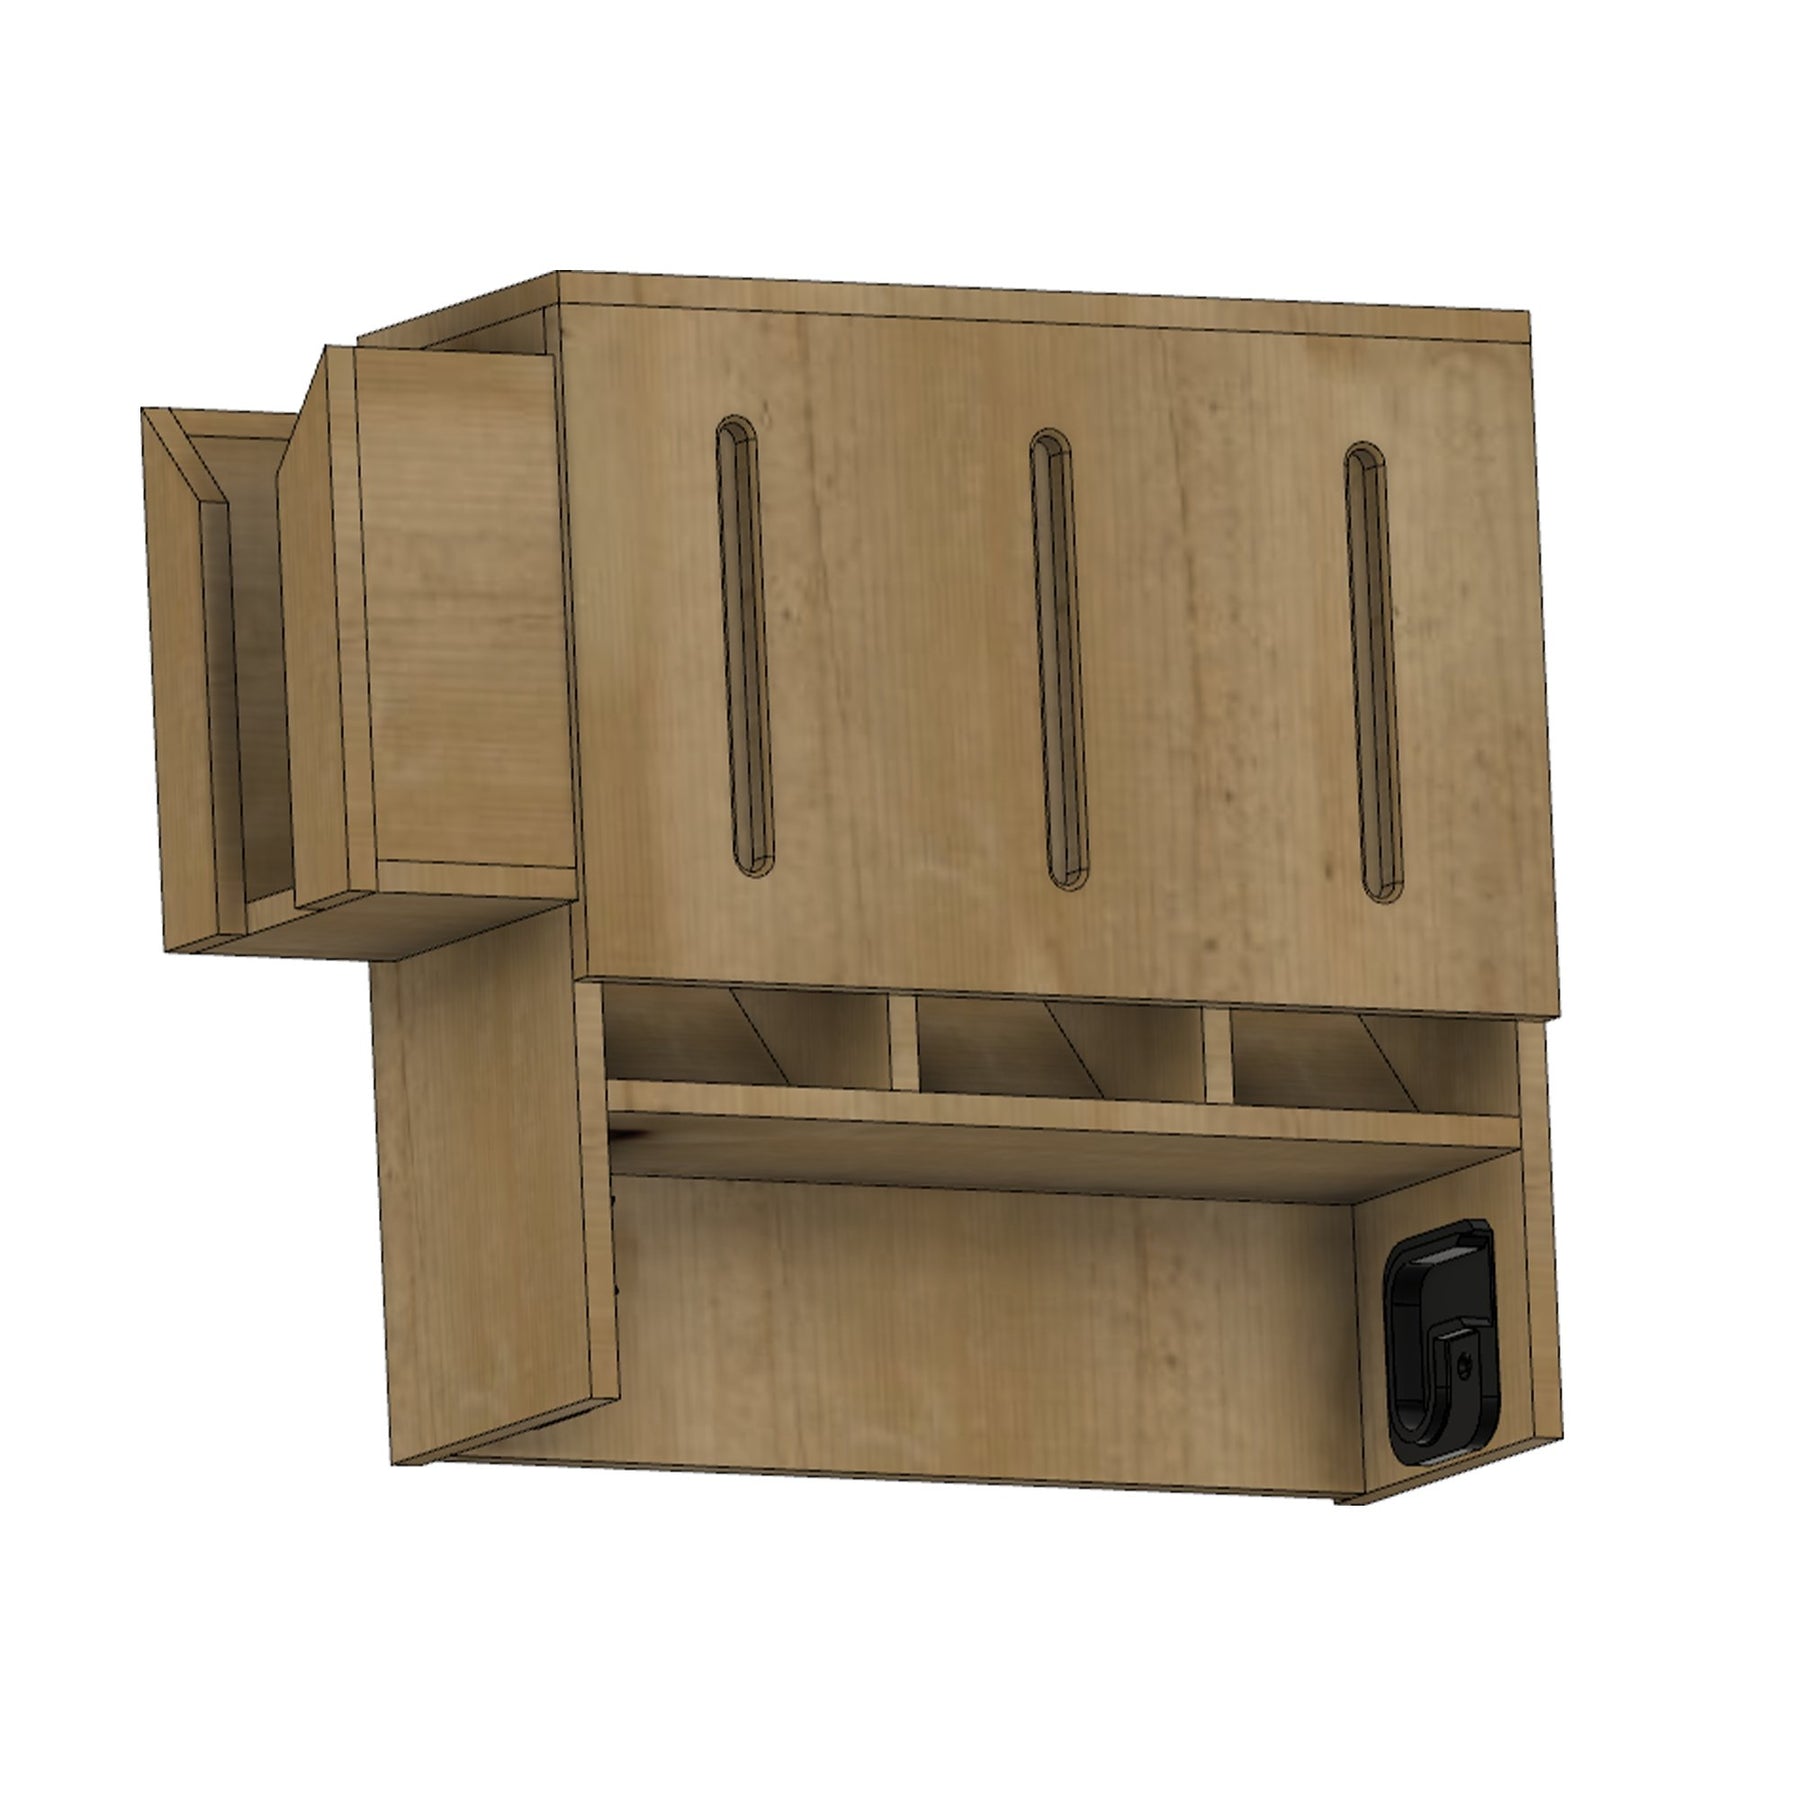 Workshop Towel Cabinet Woodworking Plans - Digital Download - Shop Nation Store